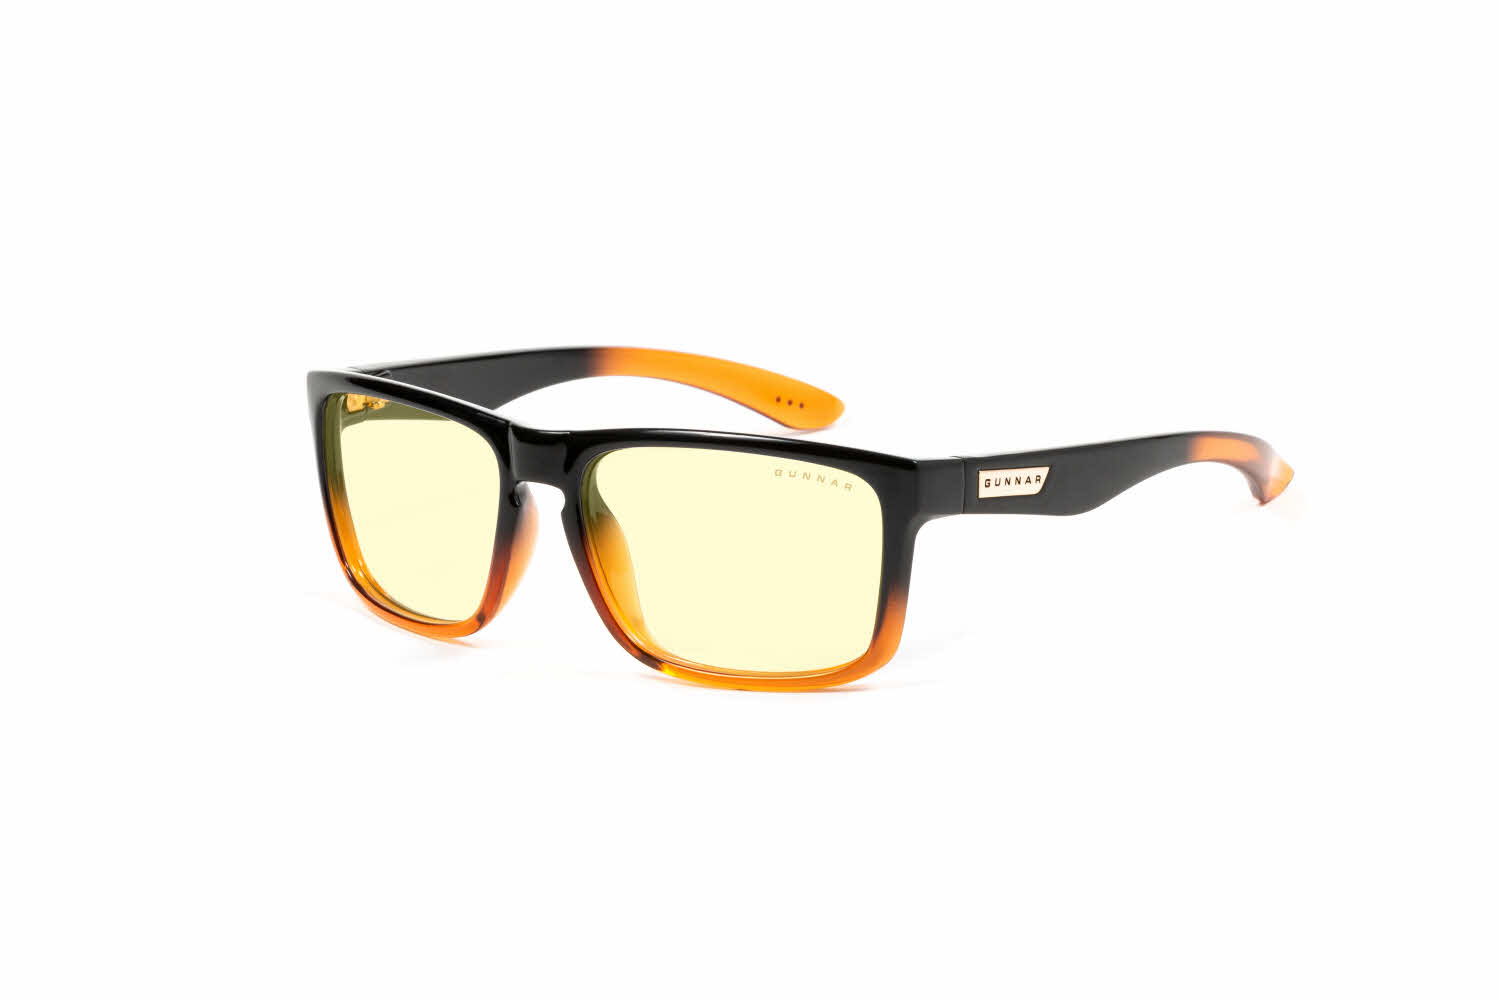 Gunnar Intercept 24K Prescription Sunglasses | FramesDirect.com